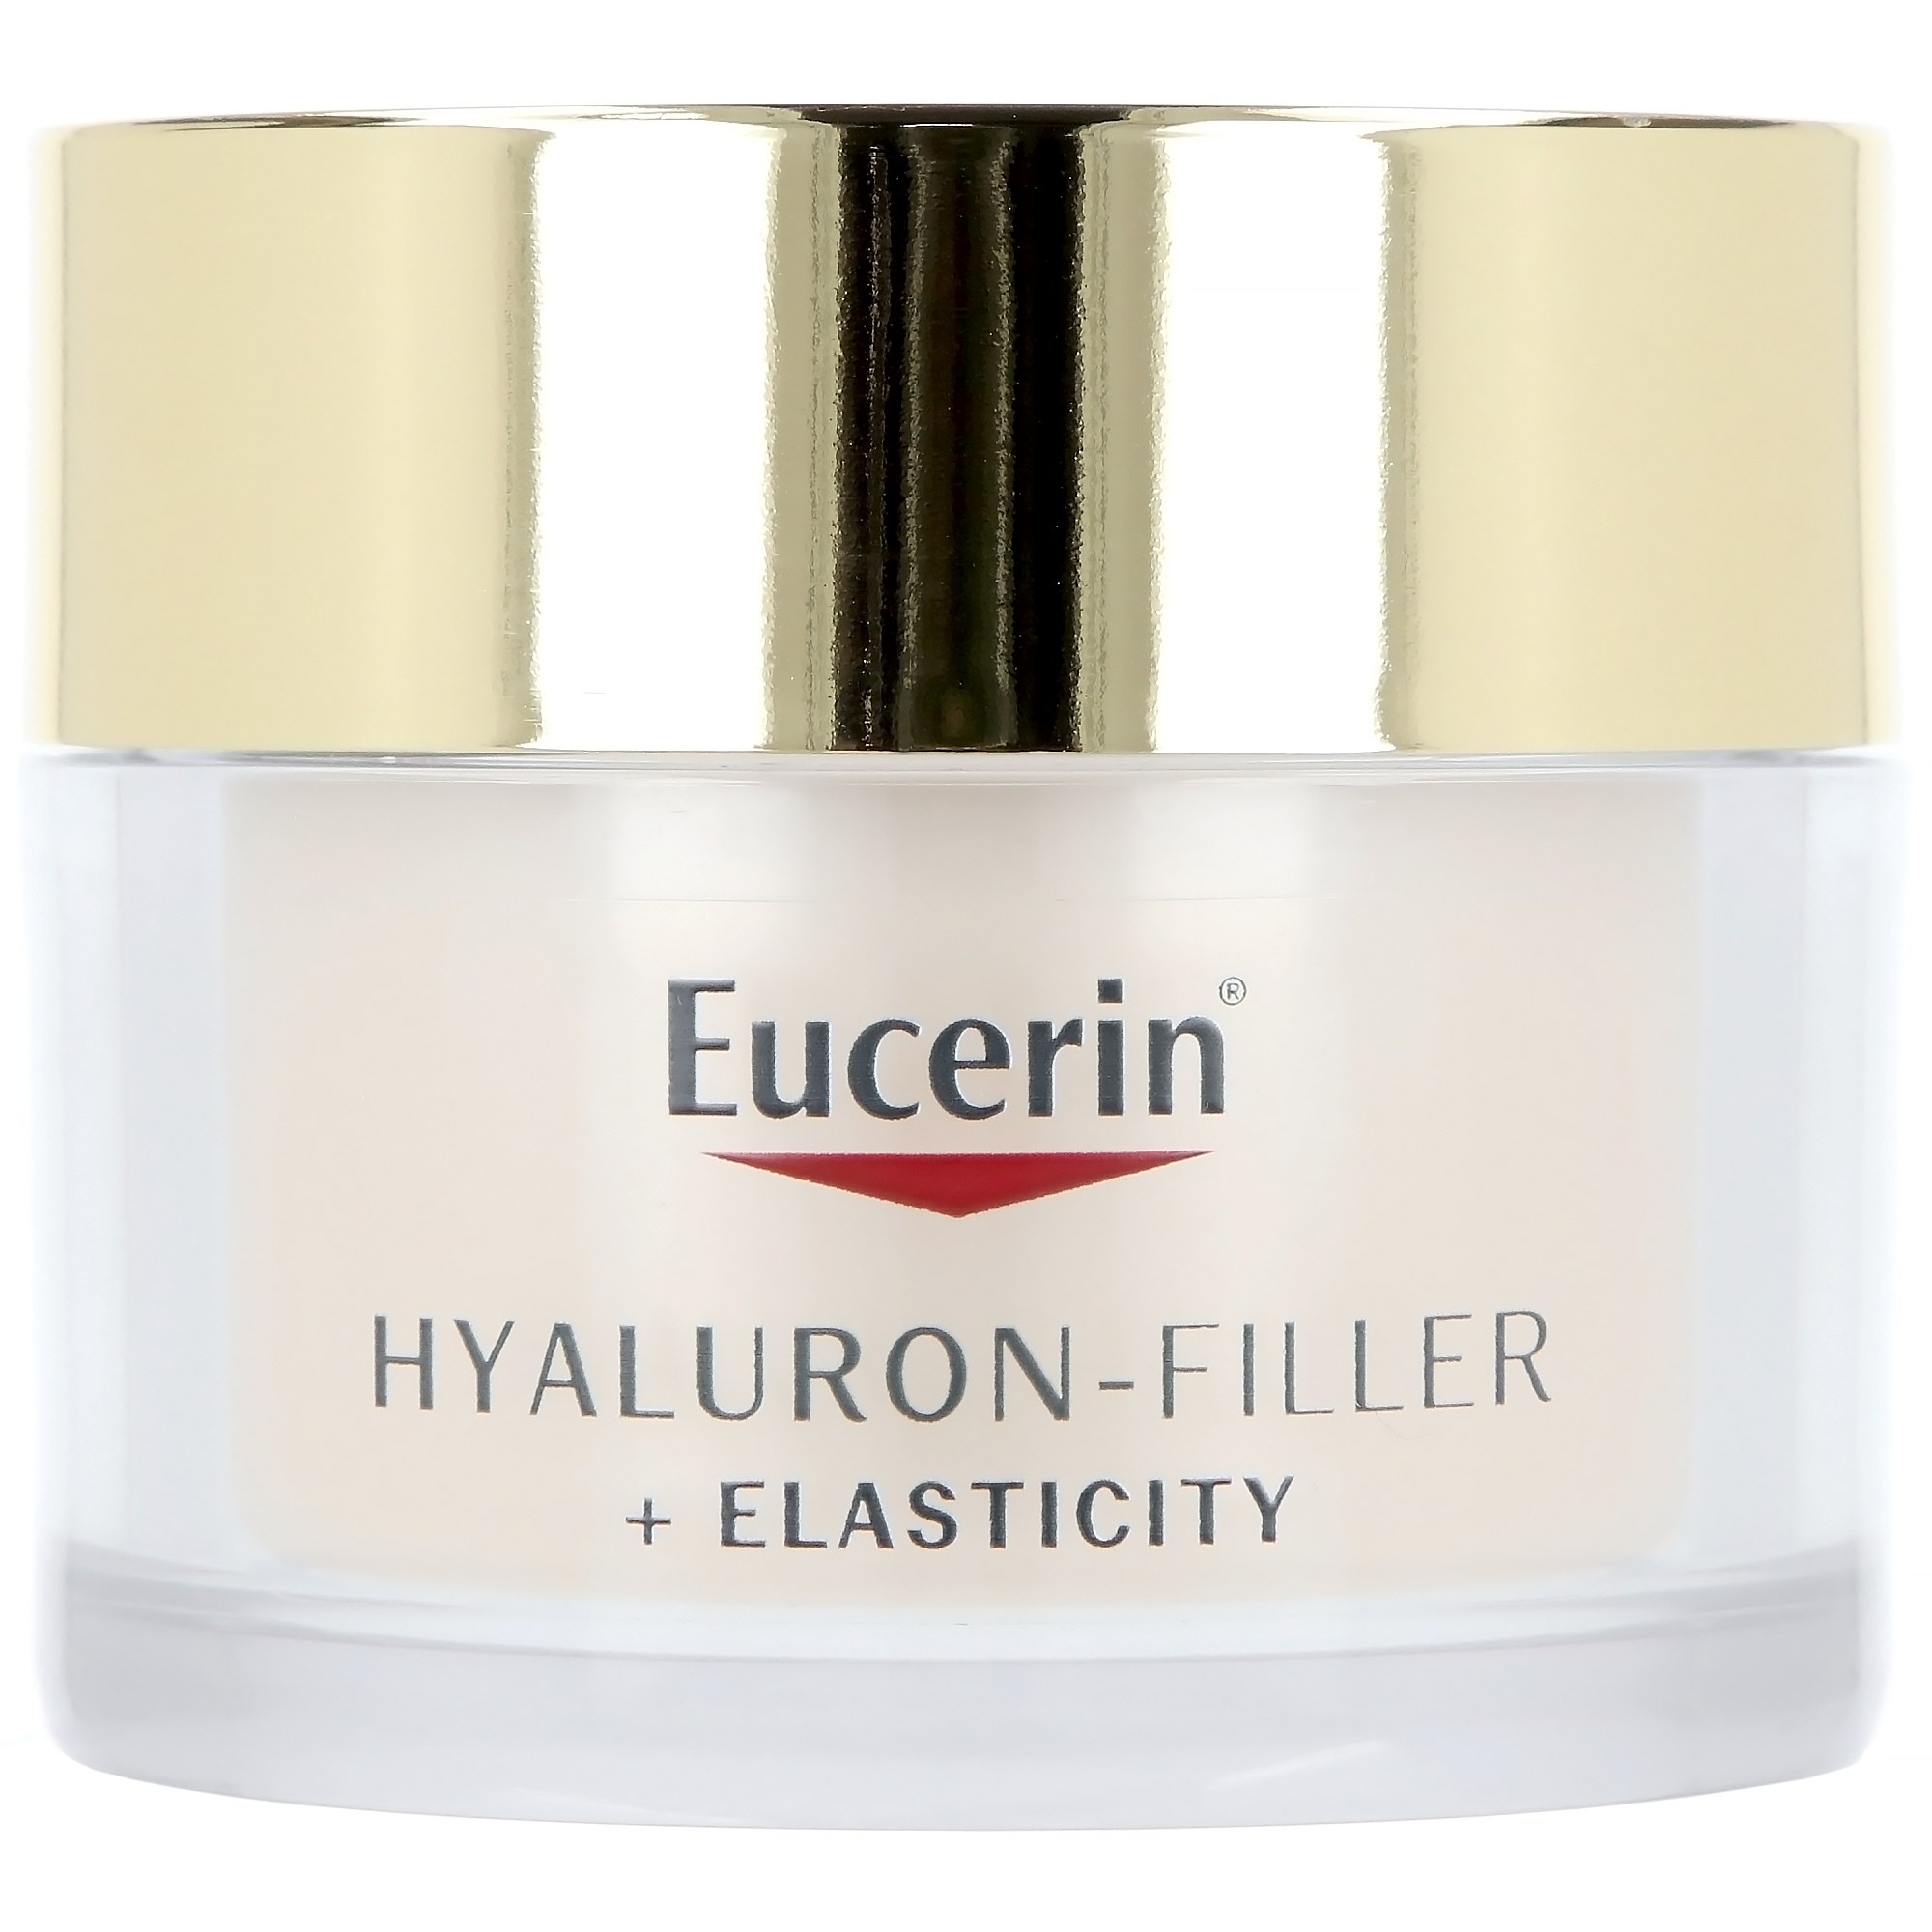 Eucerin Hyaluron-Filler Day Cream Spf30 50 ml